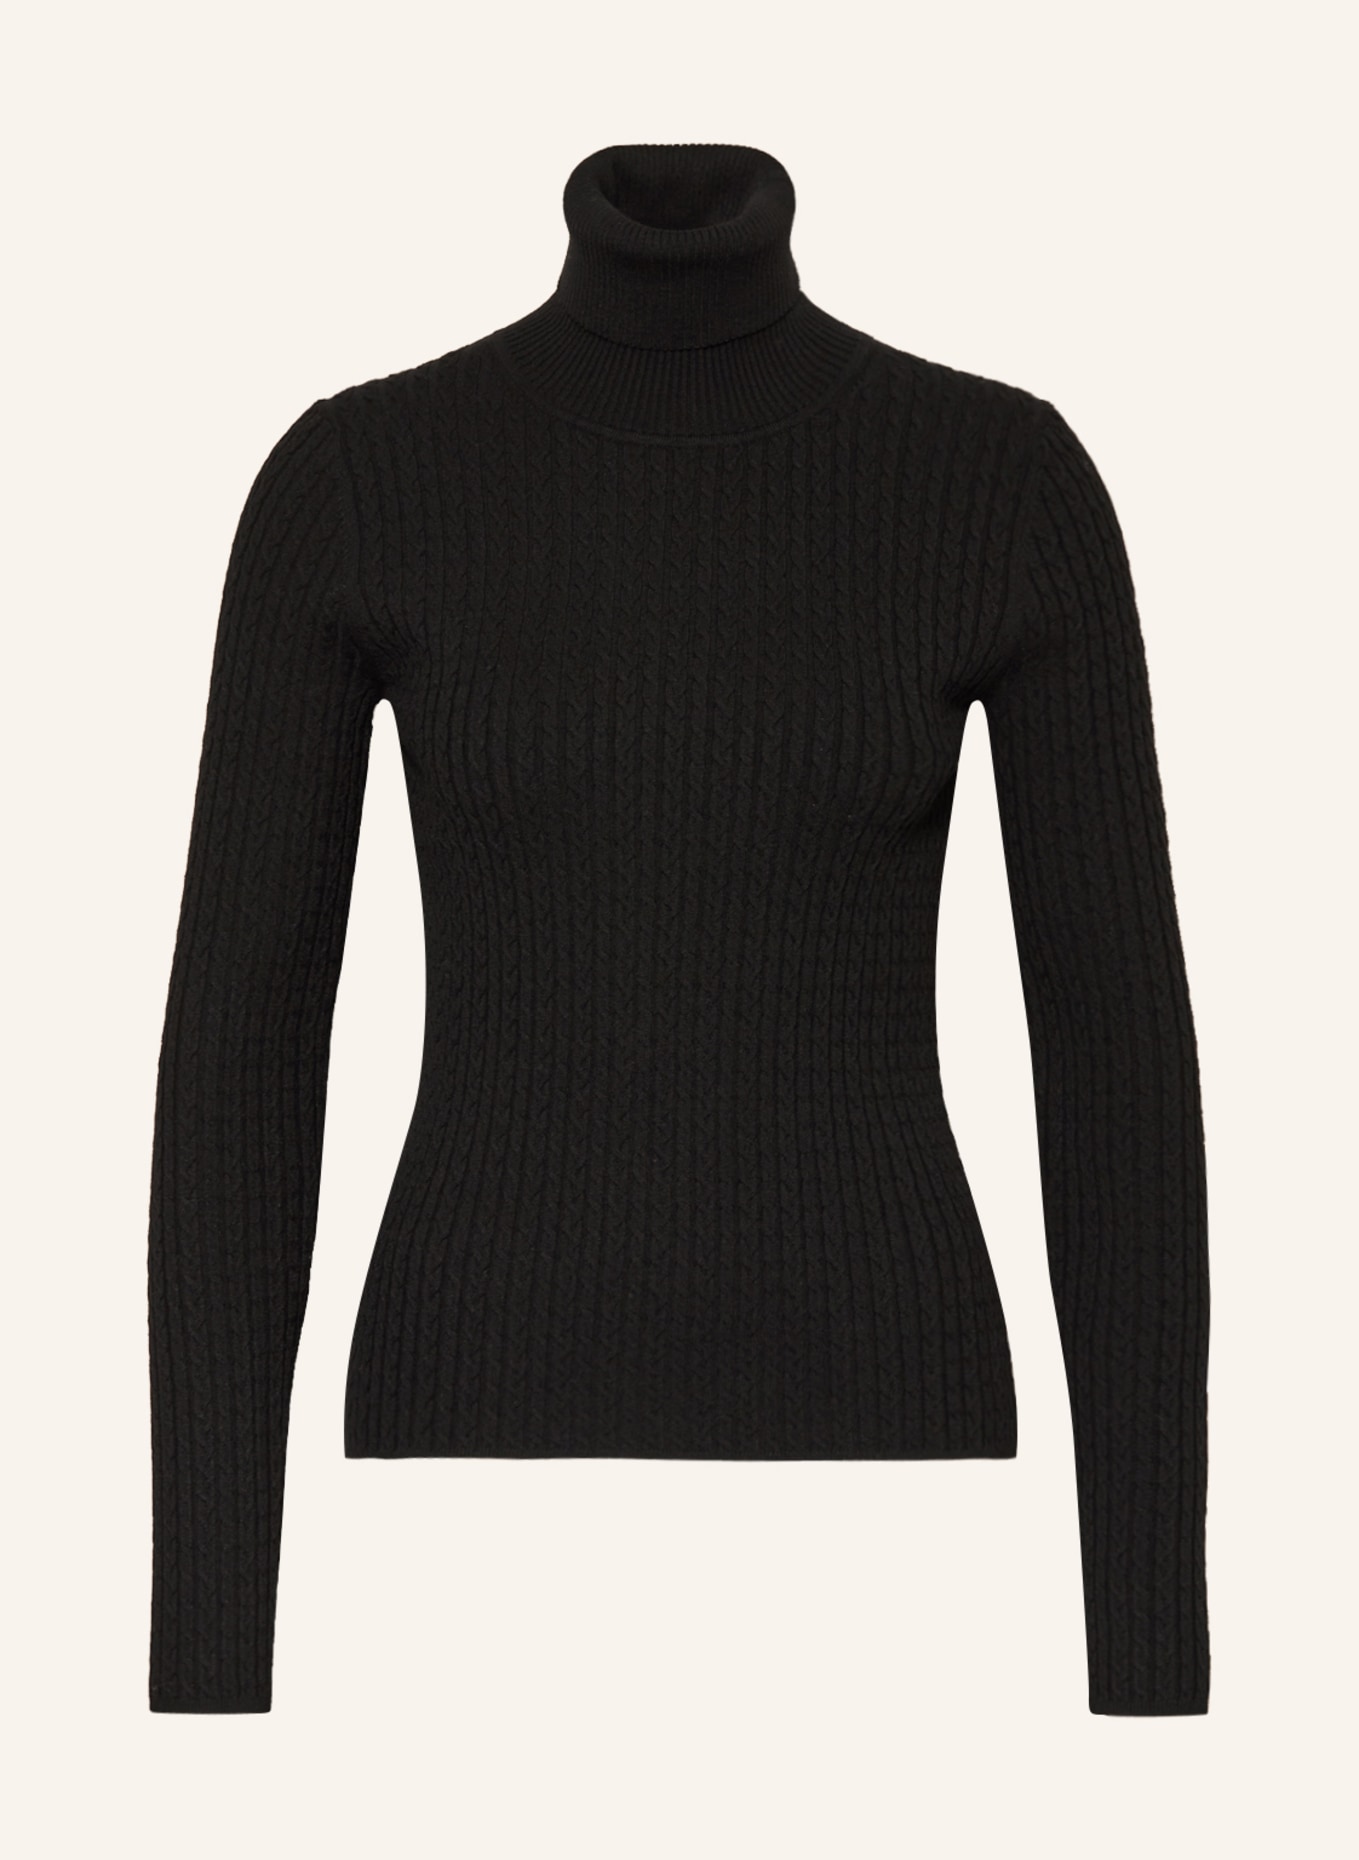 MRS & HUGS Turtleneck sweater, Color: BLACK (Image 1)